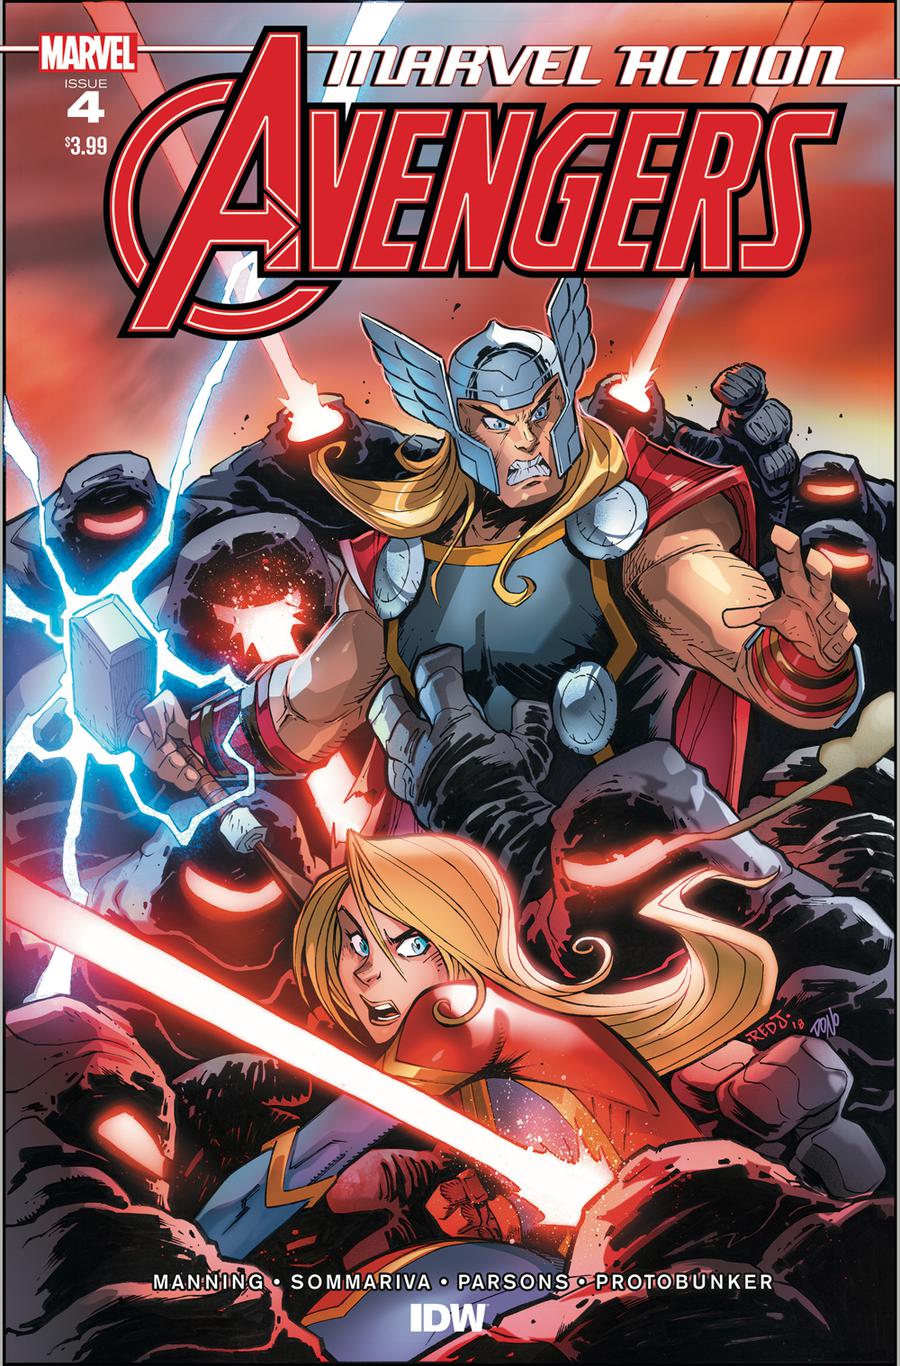 Marvel Action Avengers #4 Cover A Regular Jon Sommariva Cover